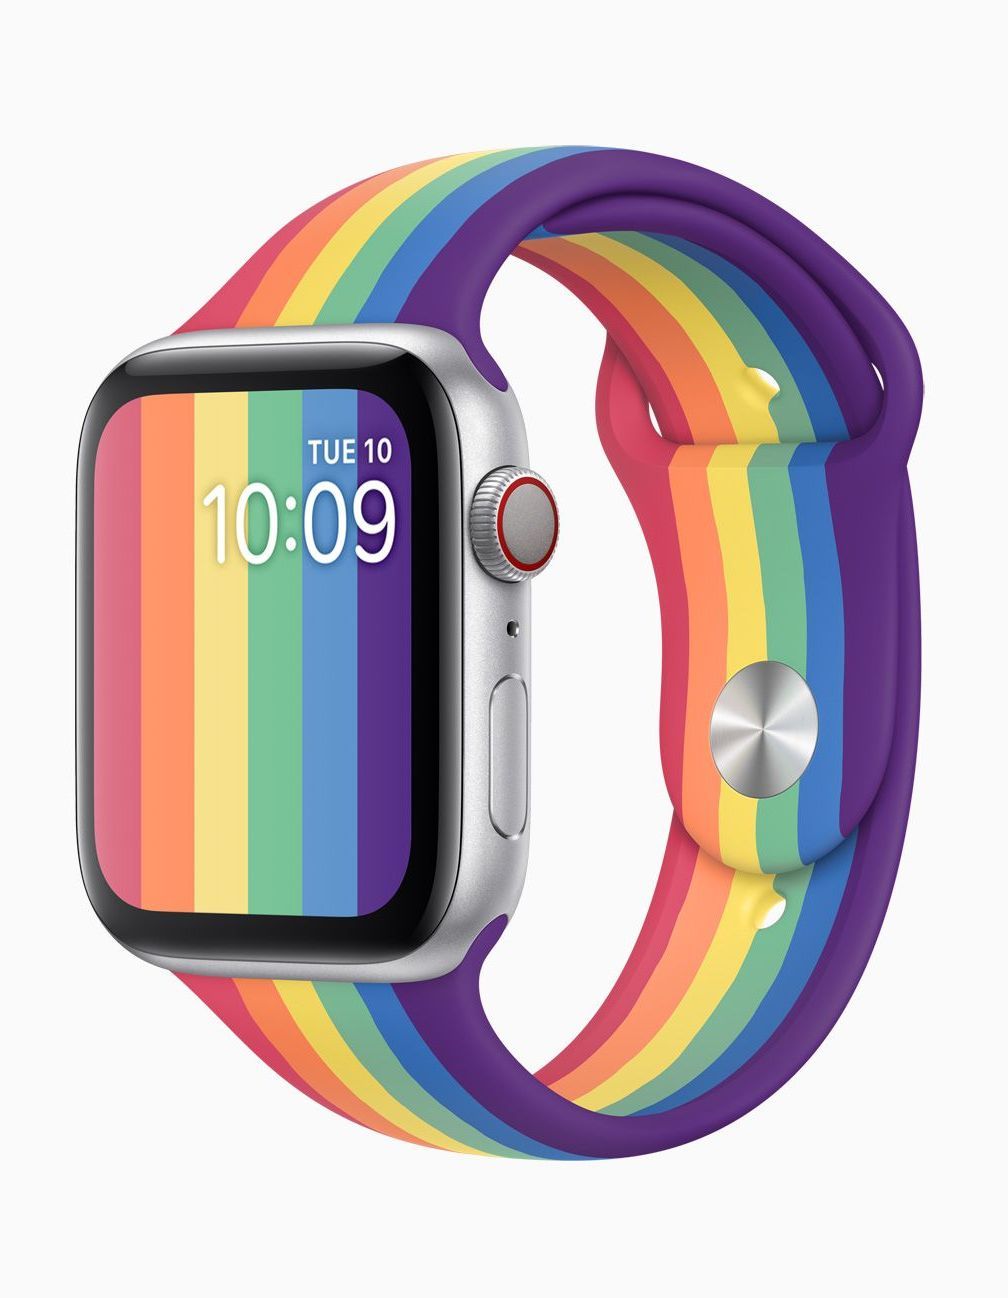 Apple dévoile ses bracelets Apple Watch Pride pour célébrer les fiertés